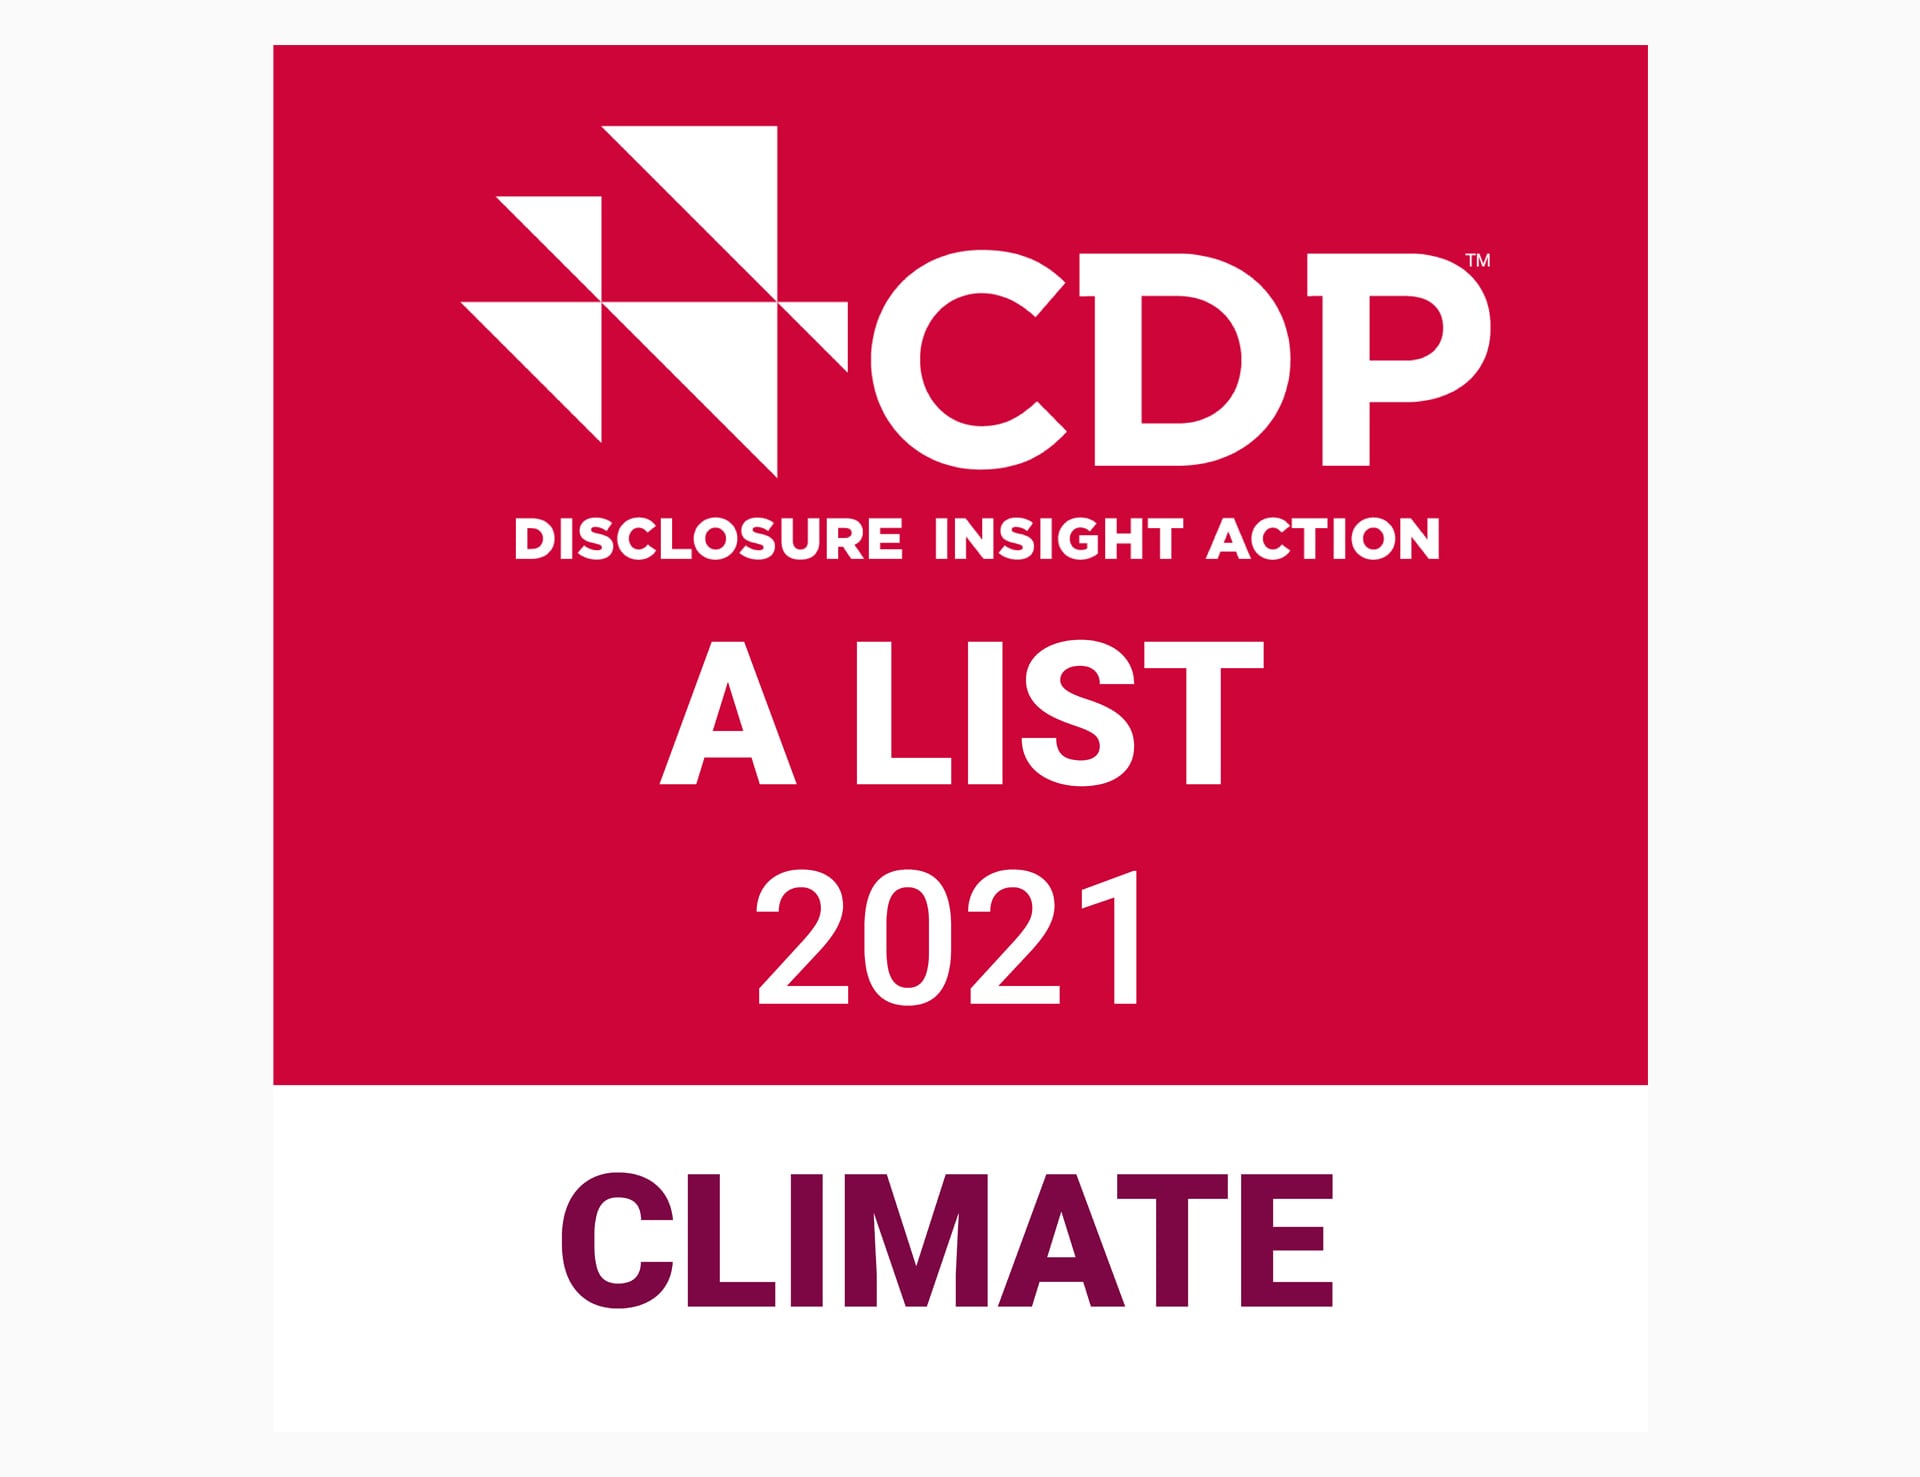 Un logotipo de la lista A de la acción de información de divulgación 2021 de CDP.